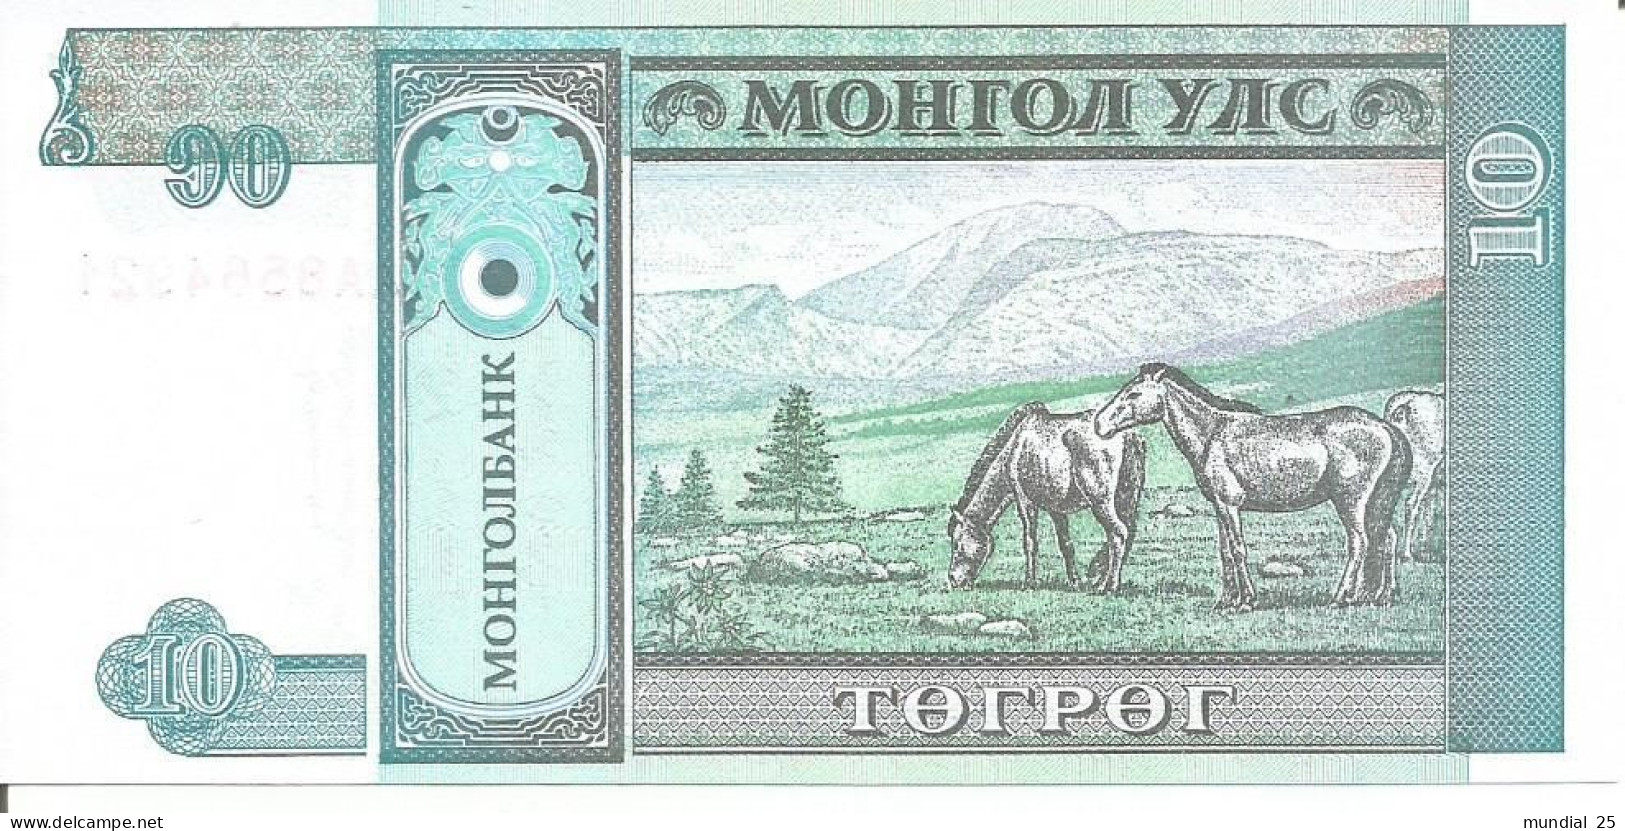 MONGOLIA 10 TUGRIK N/D (1993) - Mongolei